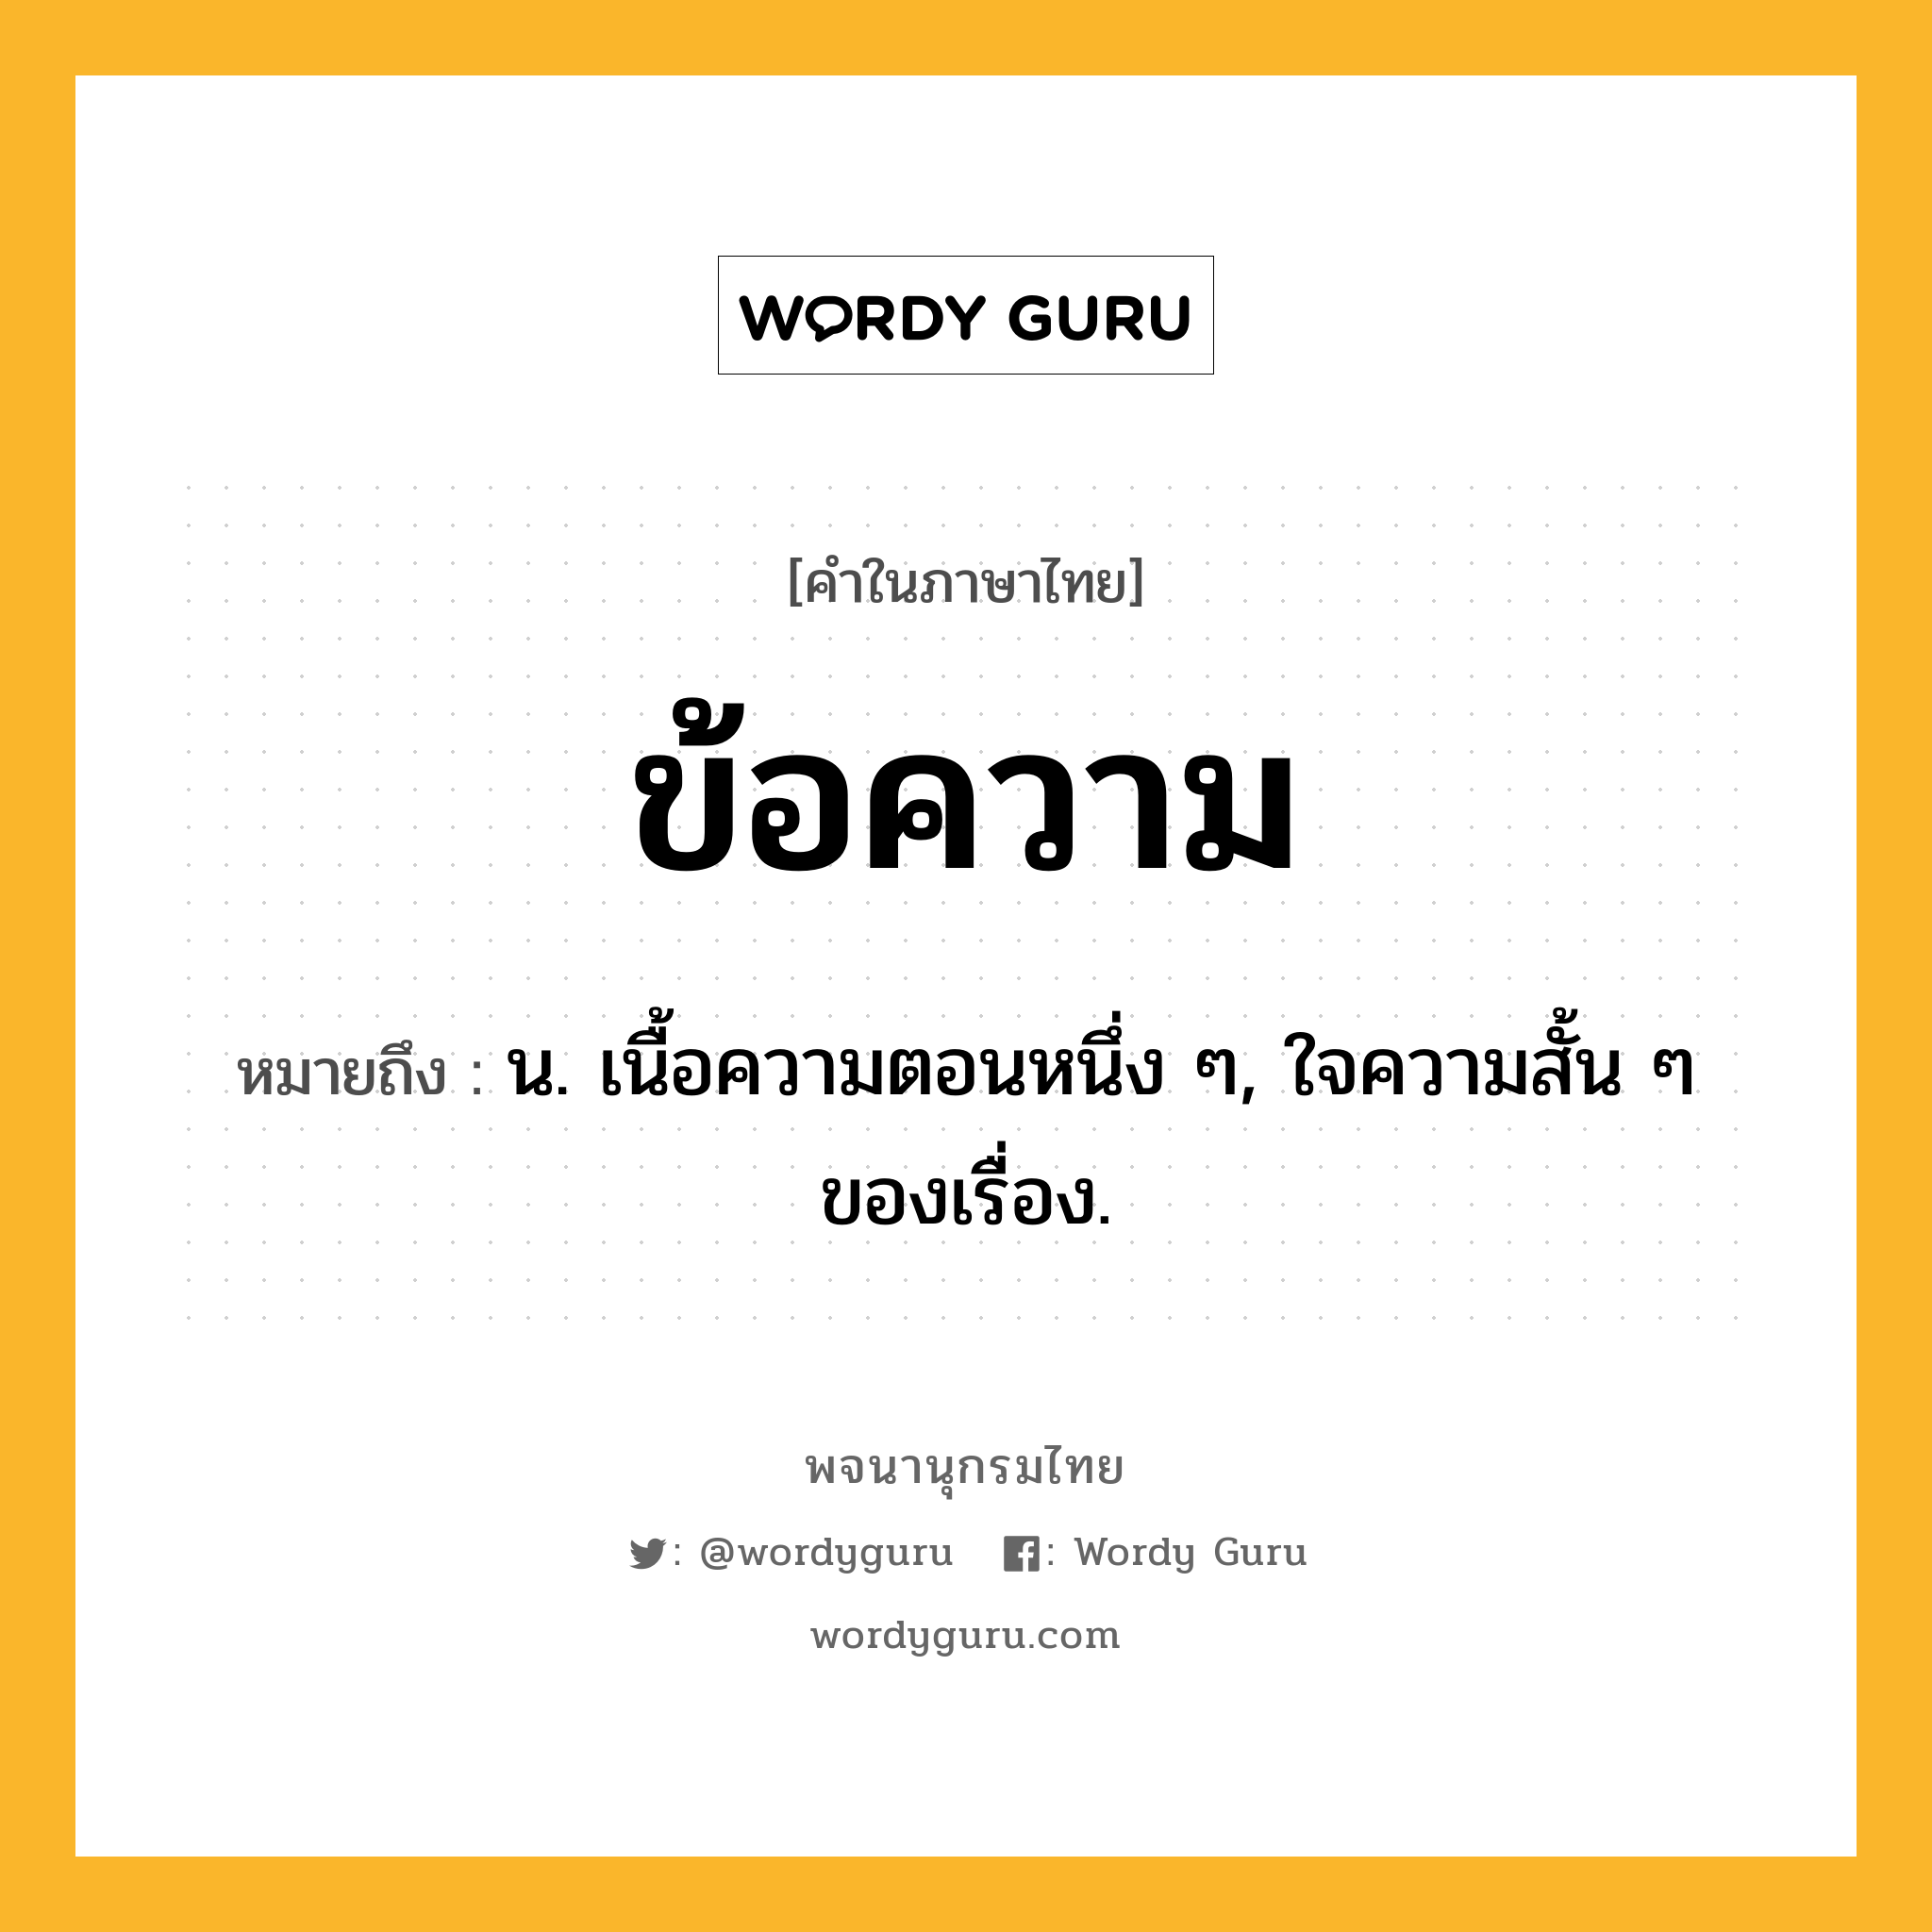 ข้อความ ความหมาย หมายถึงอะไร?, คำในภาษาไทย ข้อความ หมายถึง น. เนื้อความตอนหนึ่ง ๆ, ใจความสั้น ๆ ของเรื่อง.